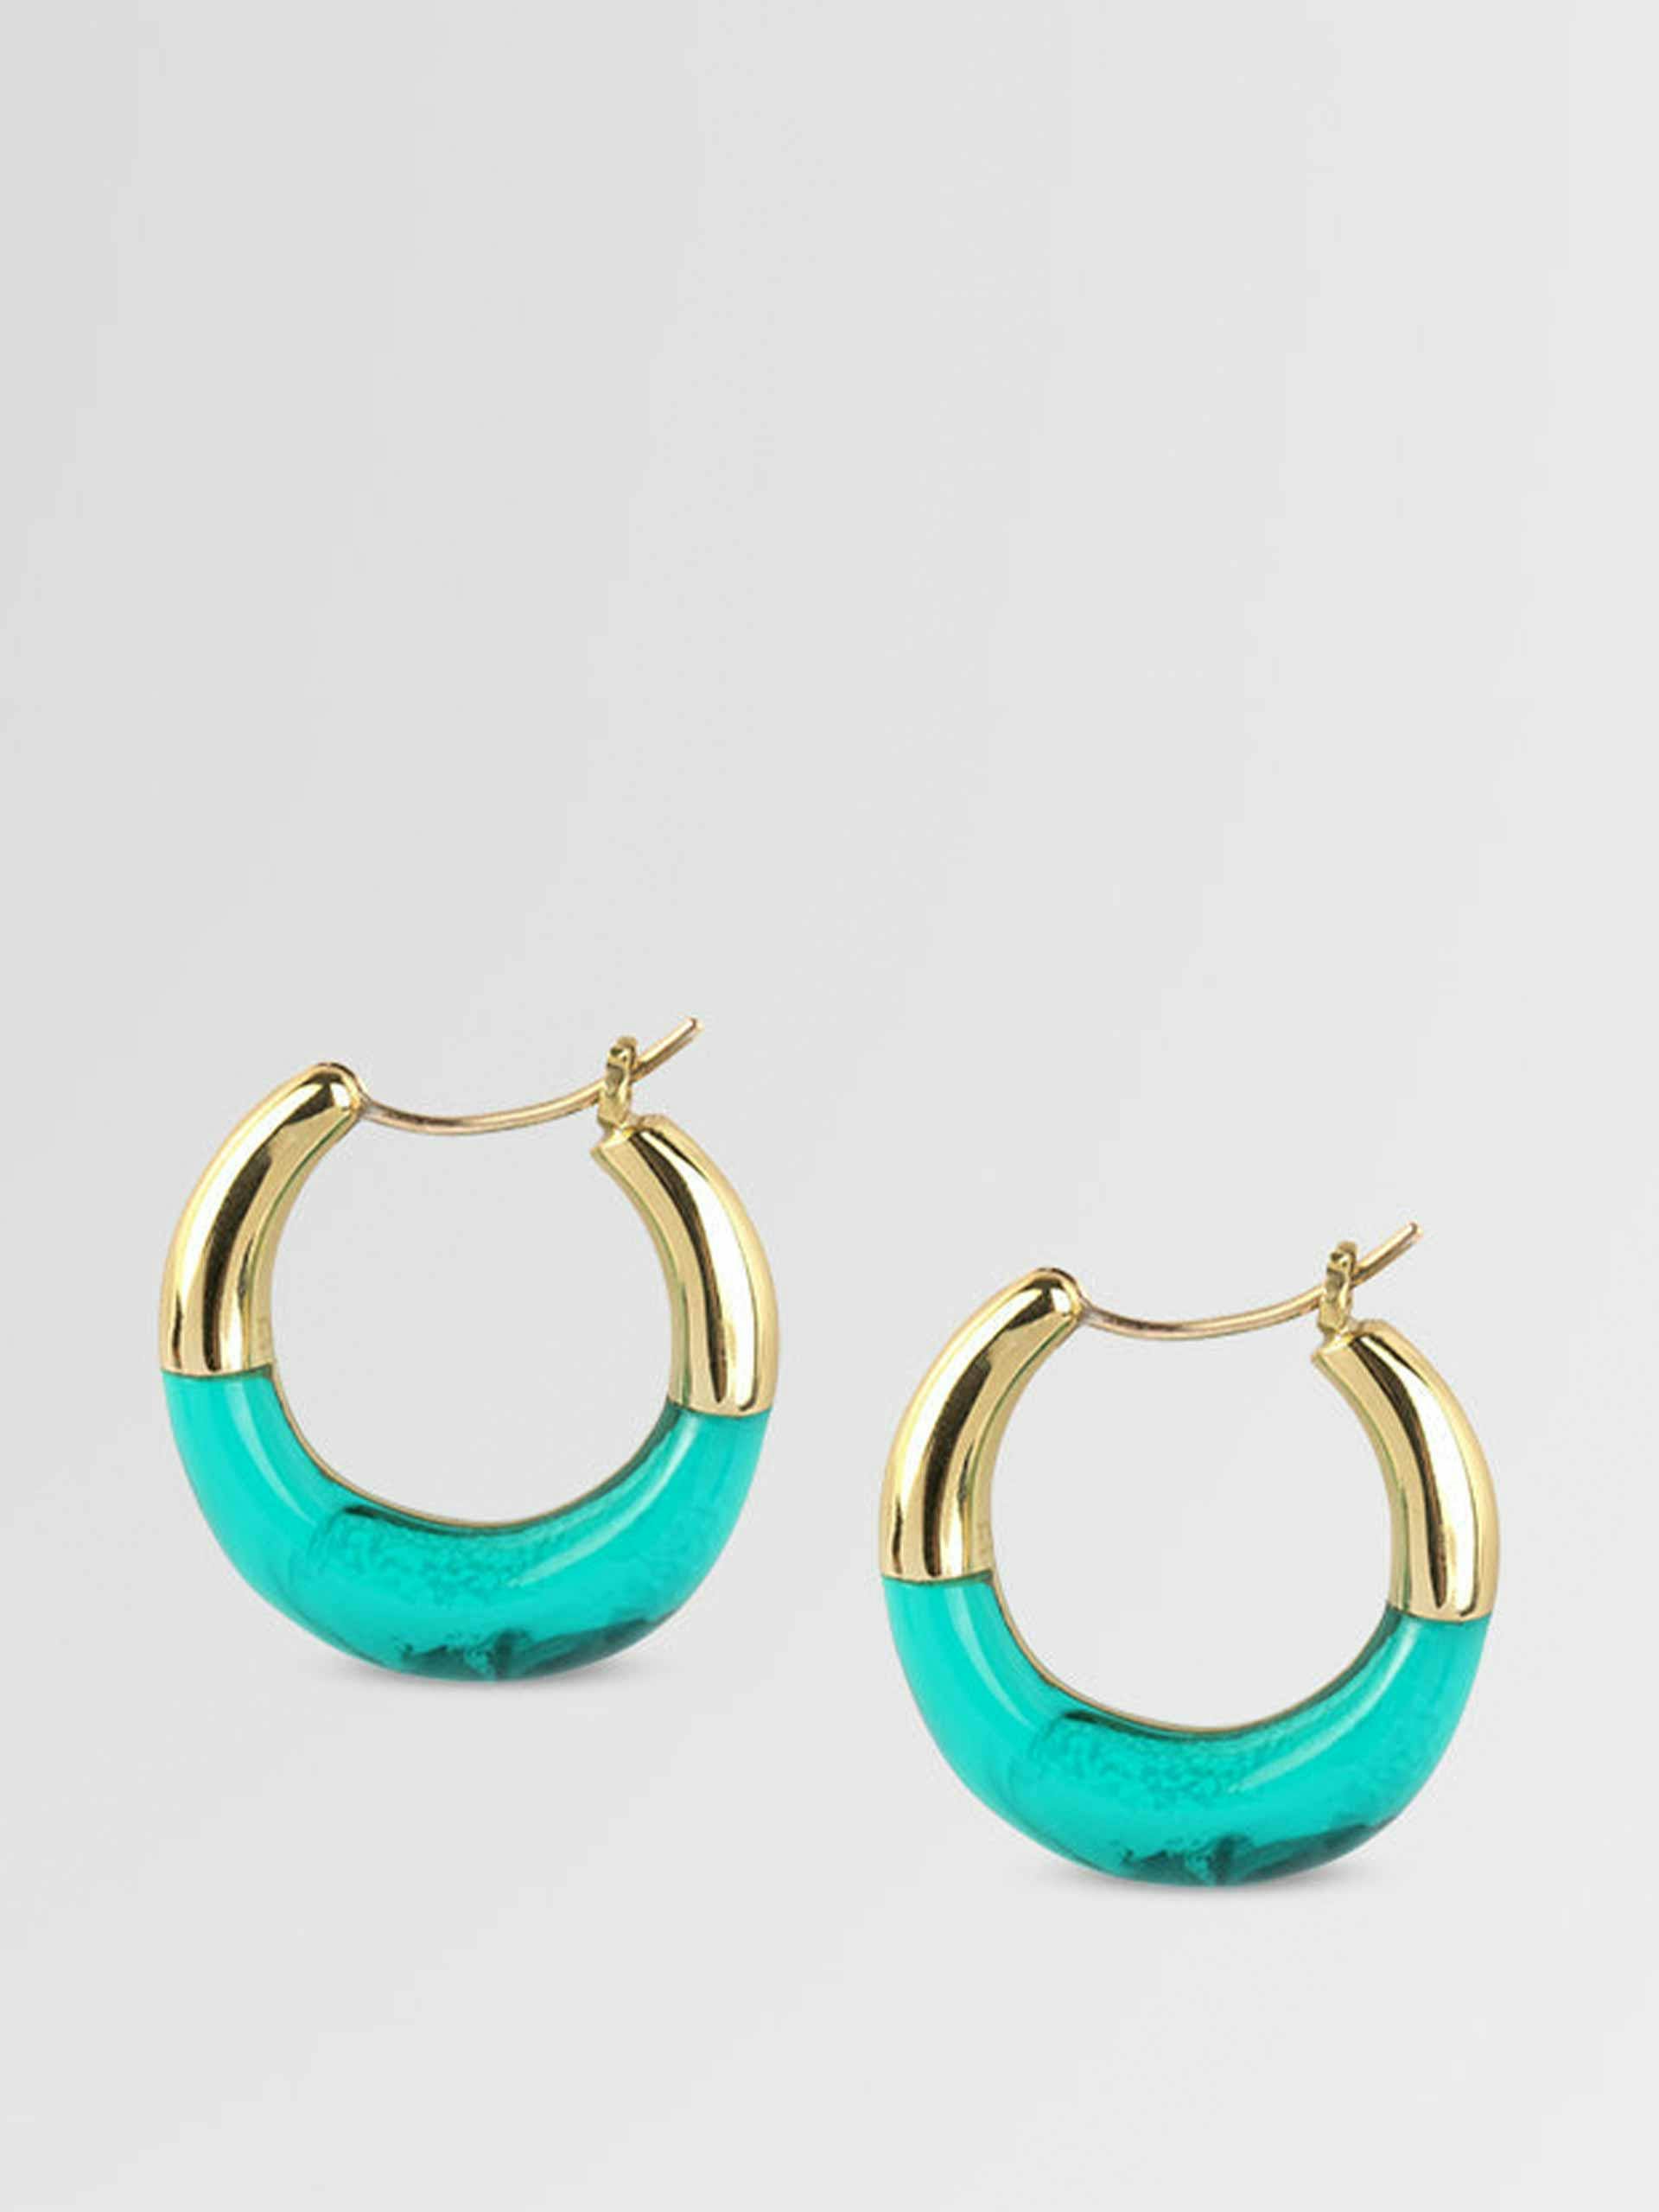 Brass and resin hoop earrings